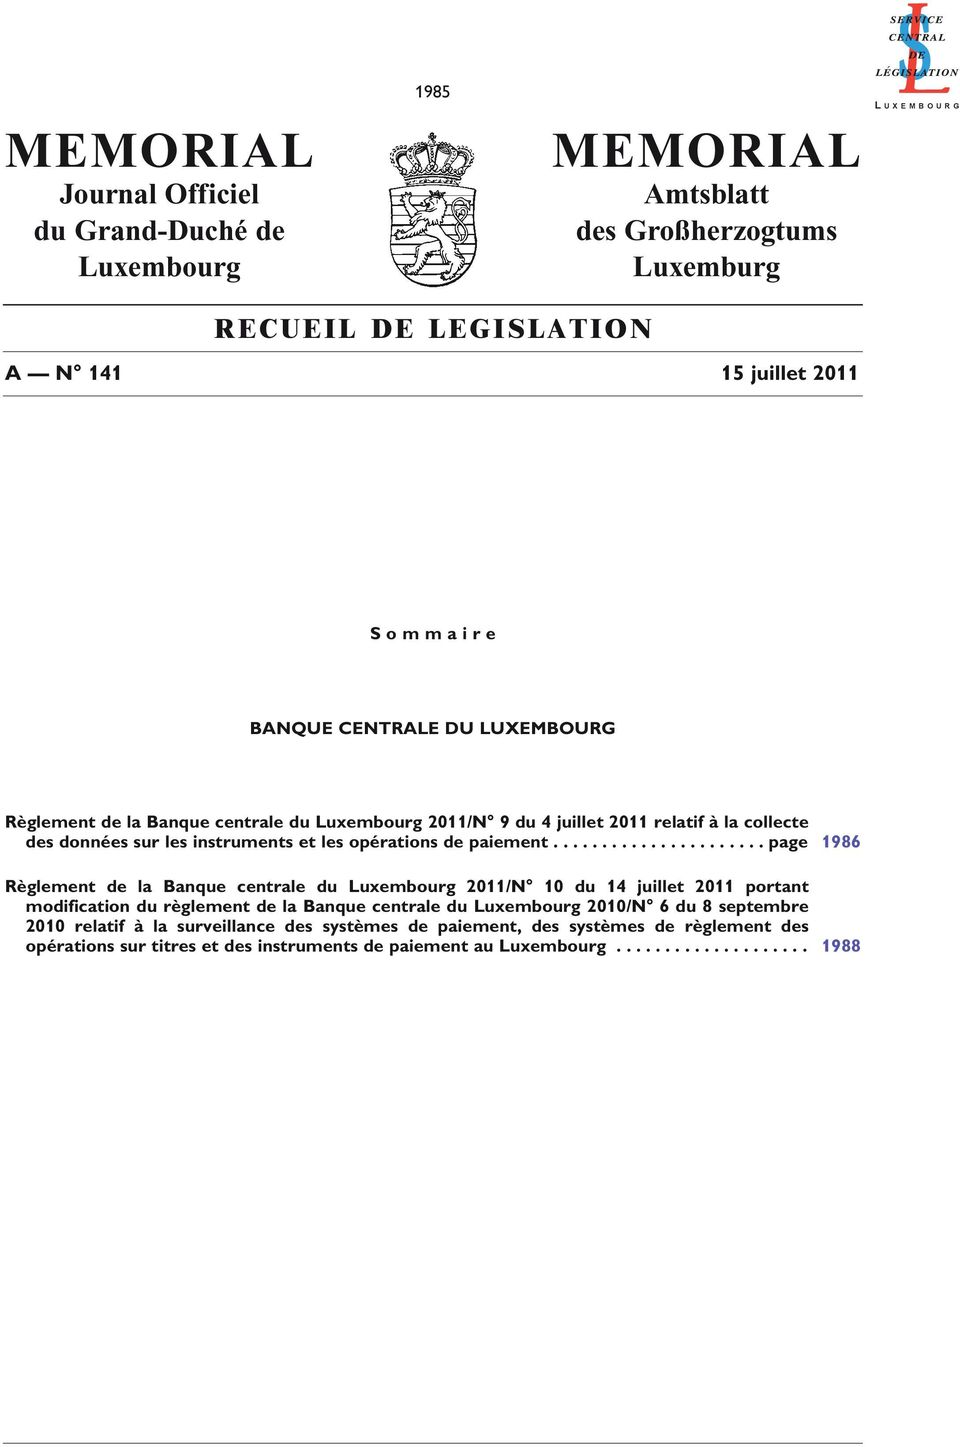 ..................... page 1986 Règlement de la Banque centrale du Luxembourg 2011/N 10 du 14 juillet 2011 portant modification du règlement de la Banque centrale du Luxembourg